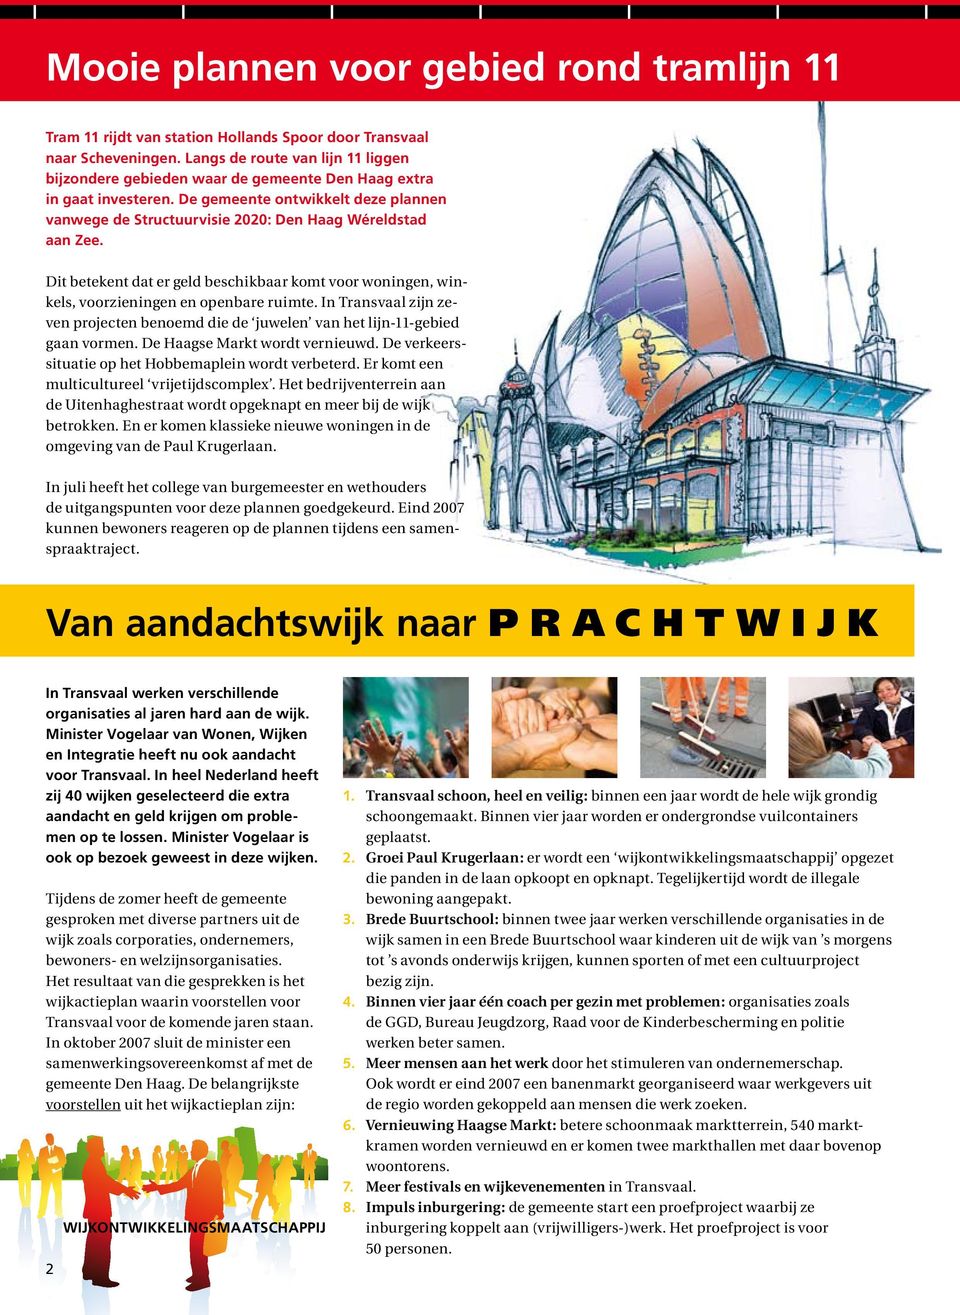 De gemeente ontwikkelt deze plannen vanwege de Structuurvisie 2020: Den Haag Wéreldstad aan Zee. Dit betekent dat er geld beschikbaar komt voor woningen, winkels, voorzieningen en openbare ruimte.